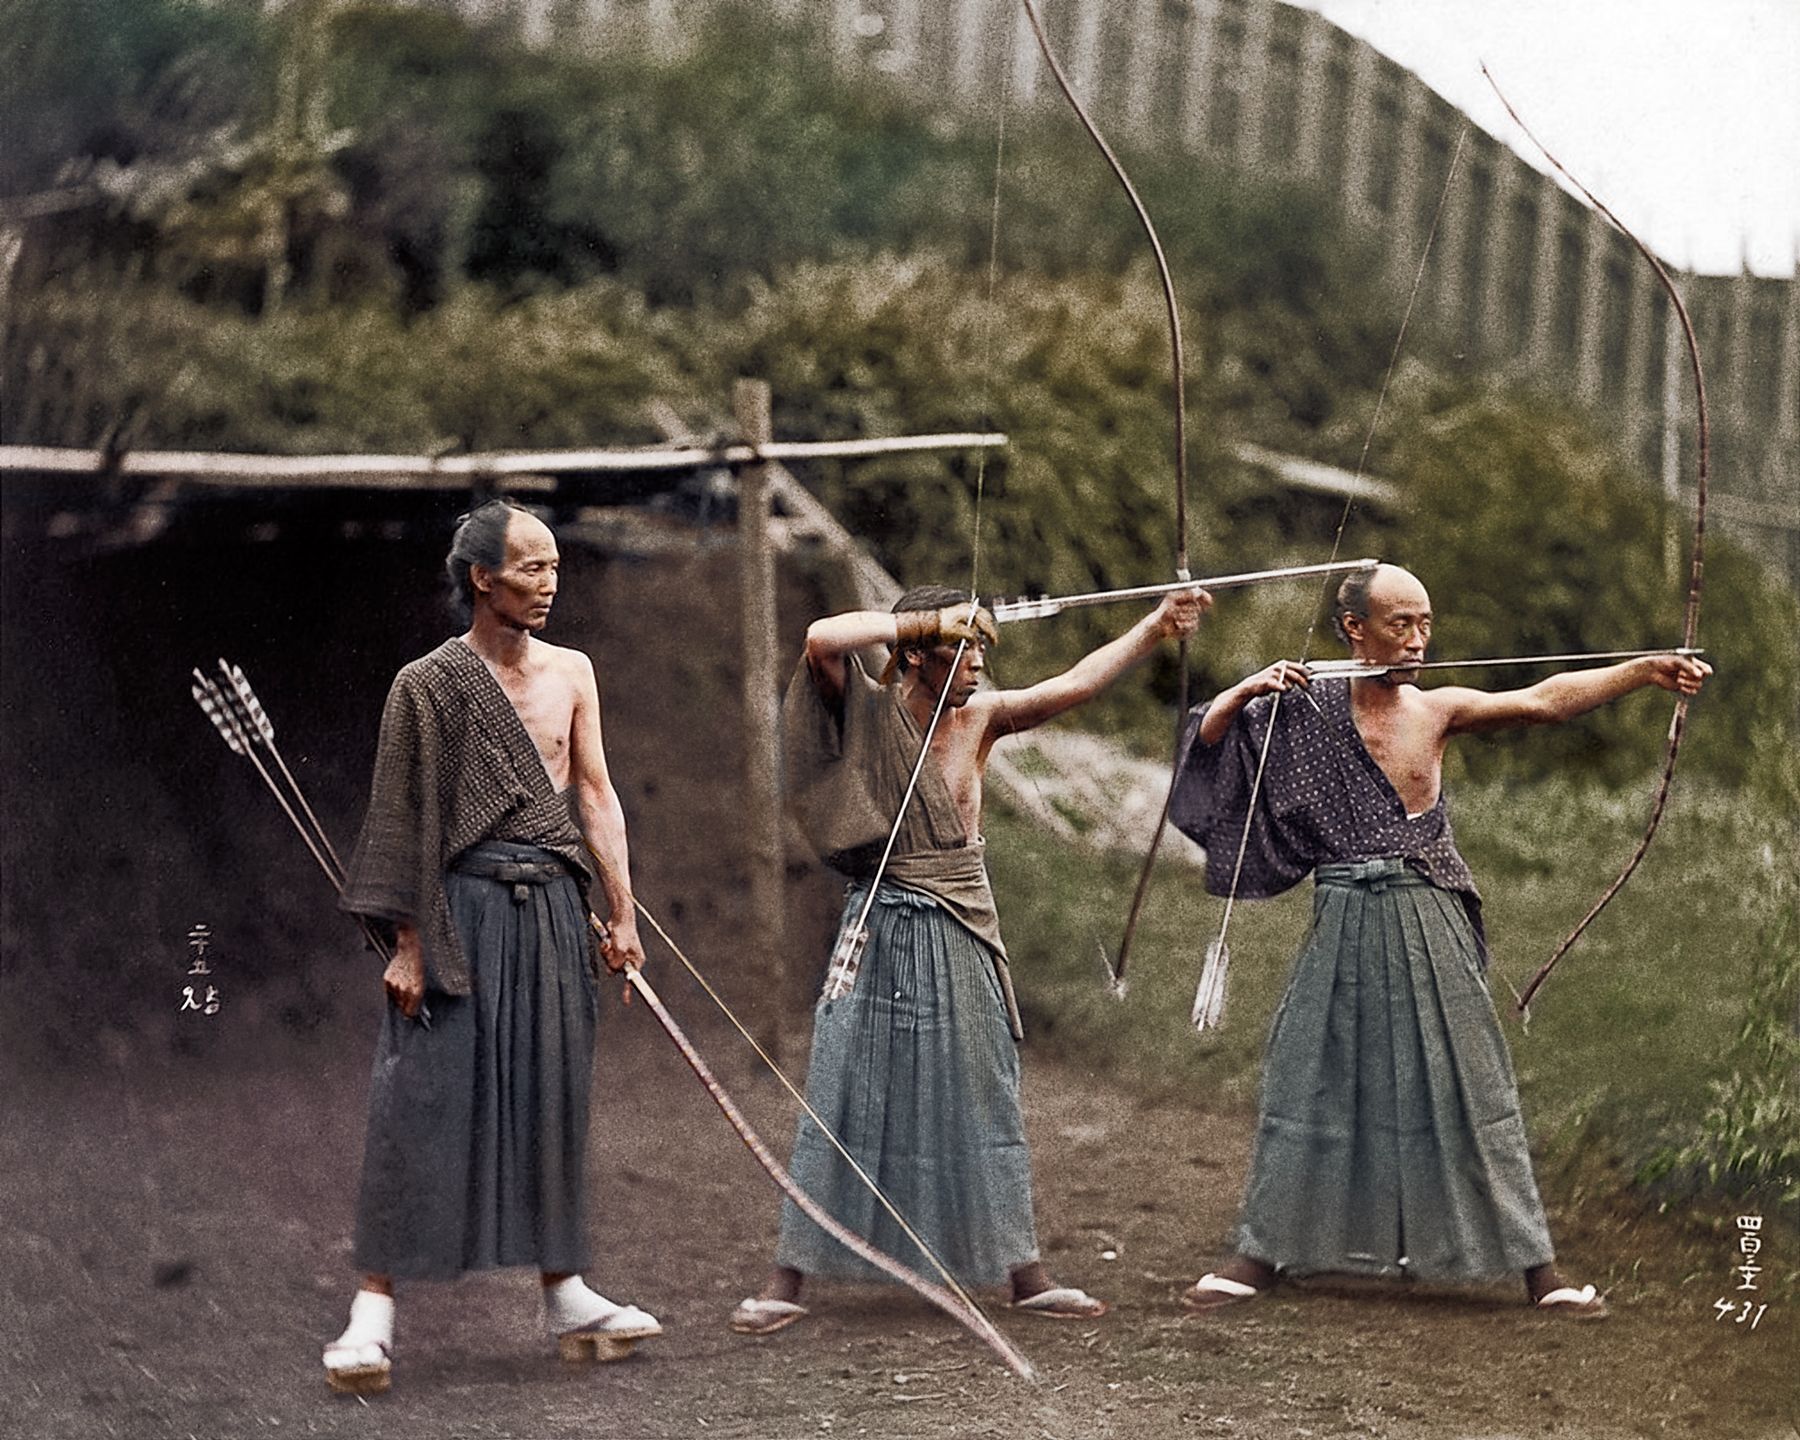 Samurai Archers